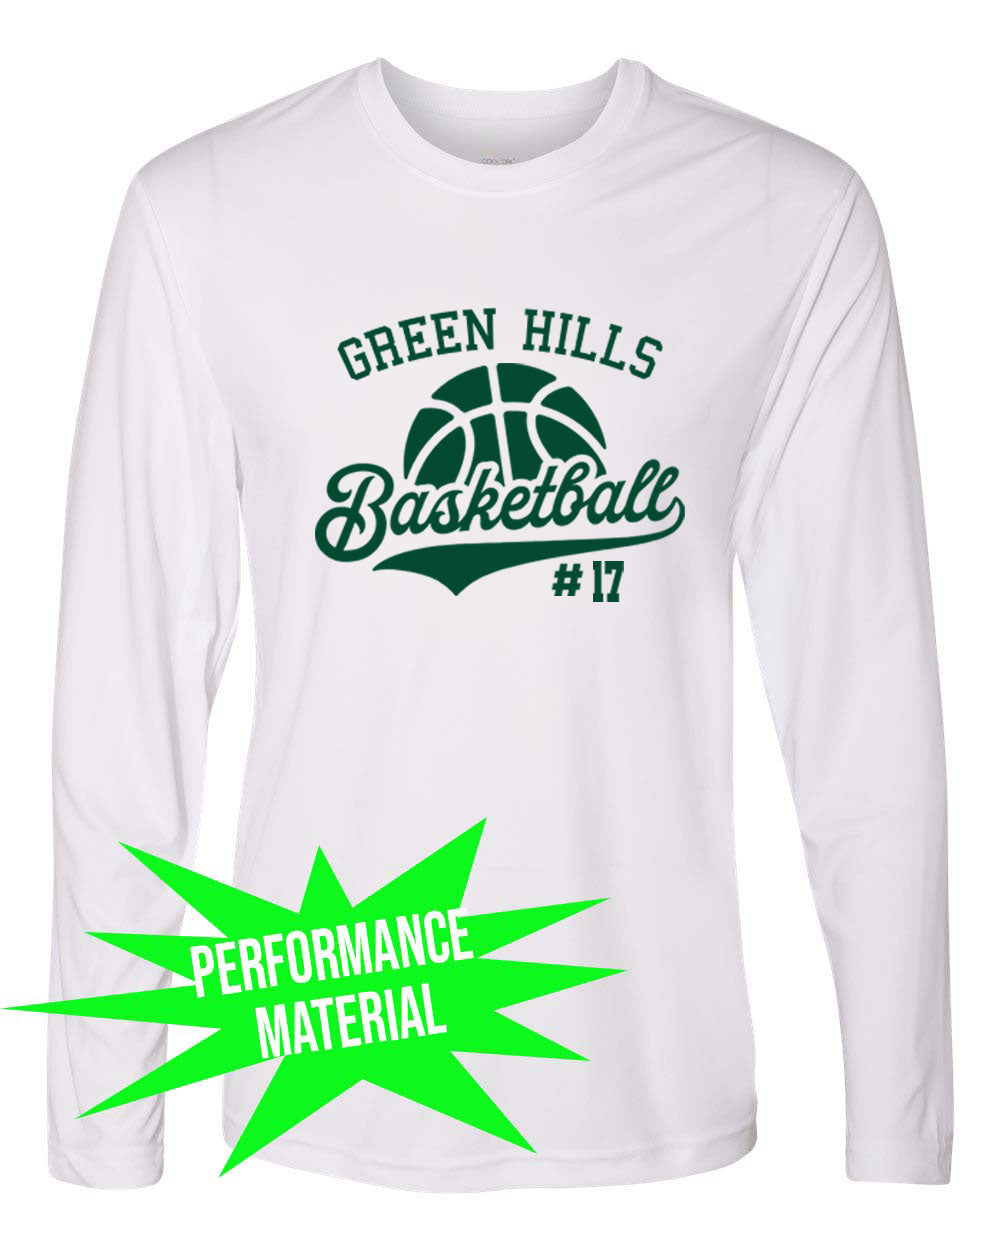 Green Hills Basketball Performance Material Long Sleeve Shirt Design 6